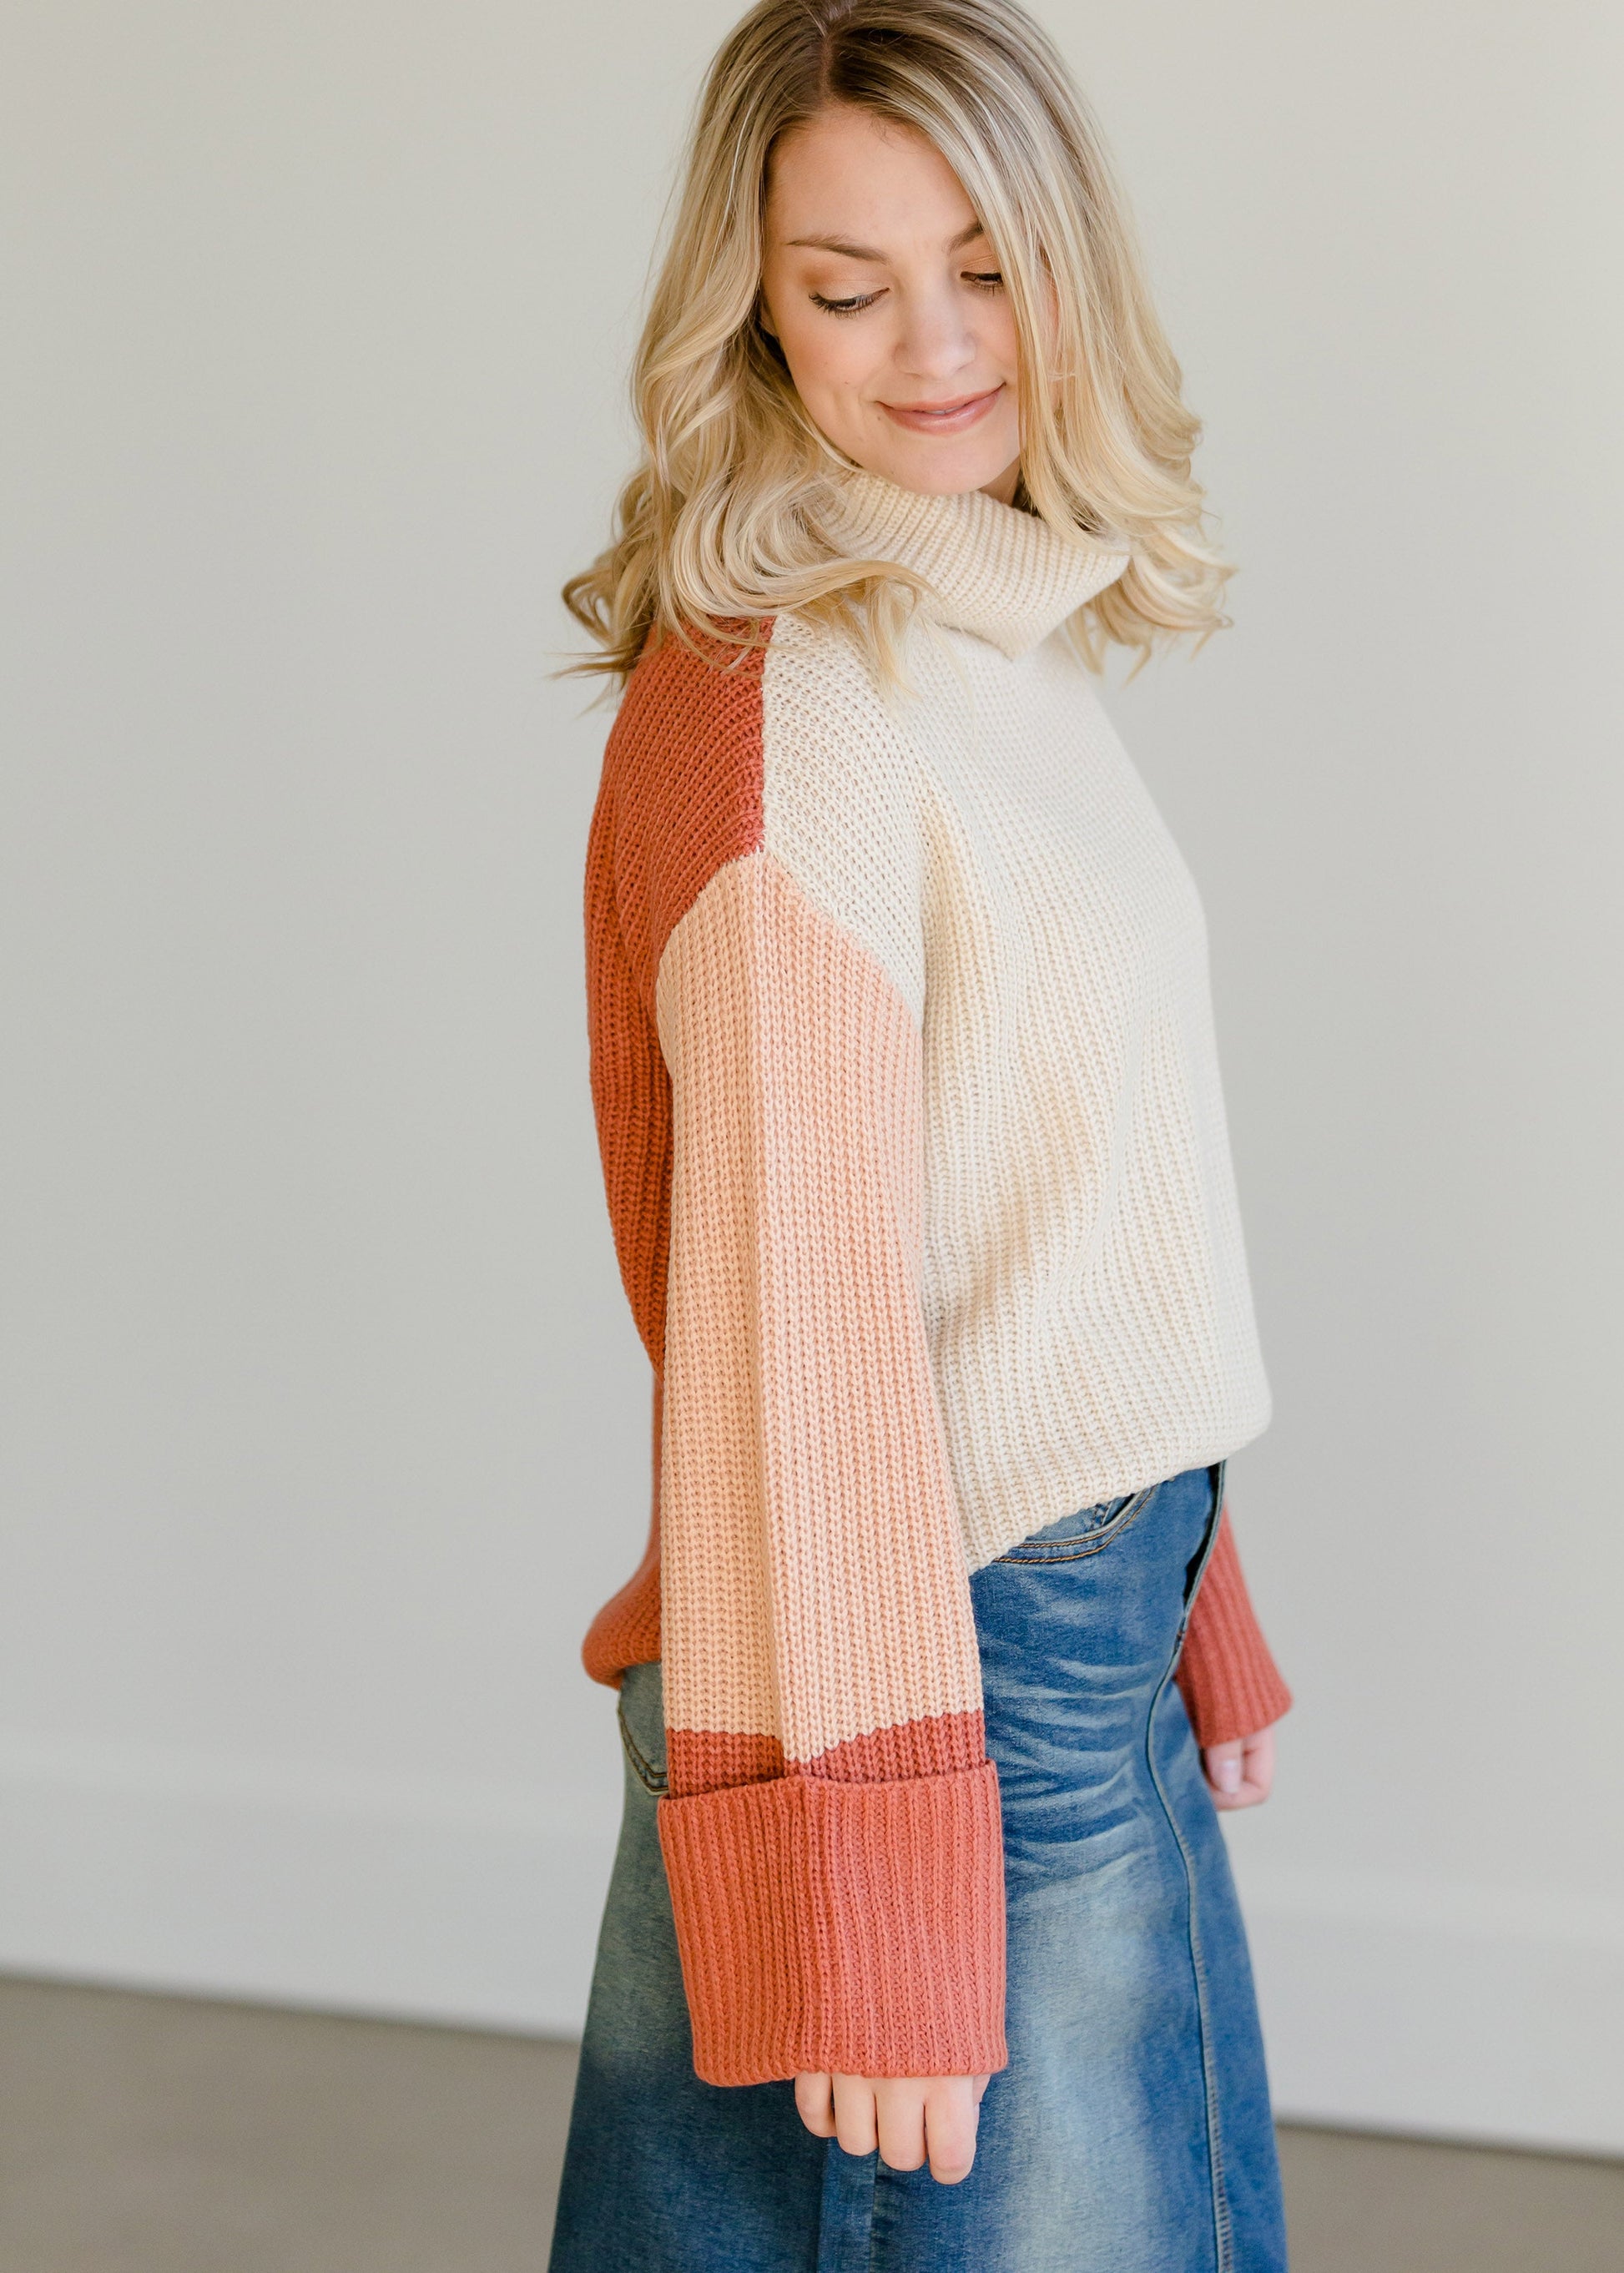 Multi Color Turtleneck Sweater - FINAL SALE Tops